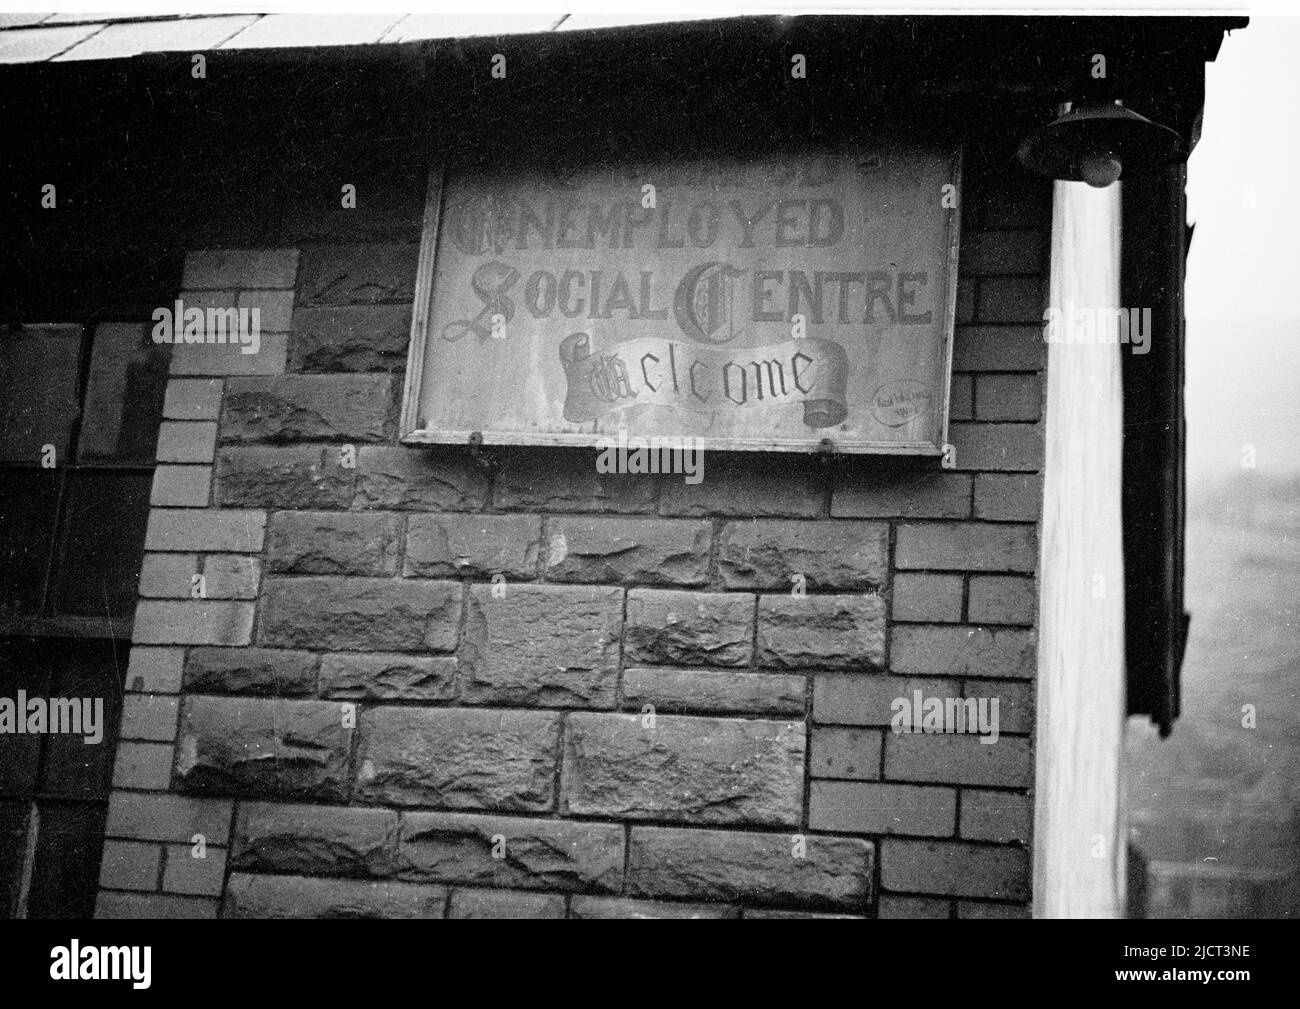 1940s, historisch, nach WW2 und auf einem Schild auf einem Gebäude steht: 'Trefahod Arbeitslose Sozialzentrum, Willkommen'. Trehafod, ein Kohlebergbaudorf in Südwales, Großbritannien, war die Heimat der Zeche Lewis Merthye, einer der produktivsten Zechen in Südwales. Das soziale Zentrum war ein Ort, an dem sich arbeitsveraltende Bergleute treffen konnten, um sich zu unterhalten und Cribbage zu spielen. Stockfoto